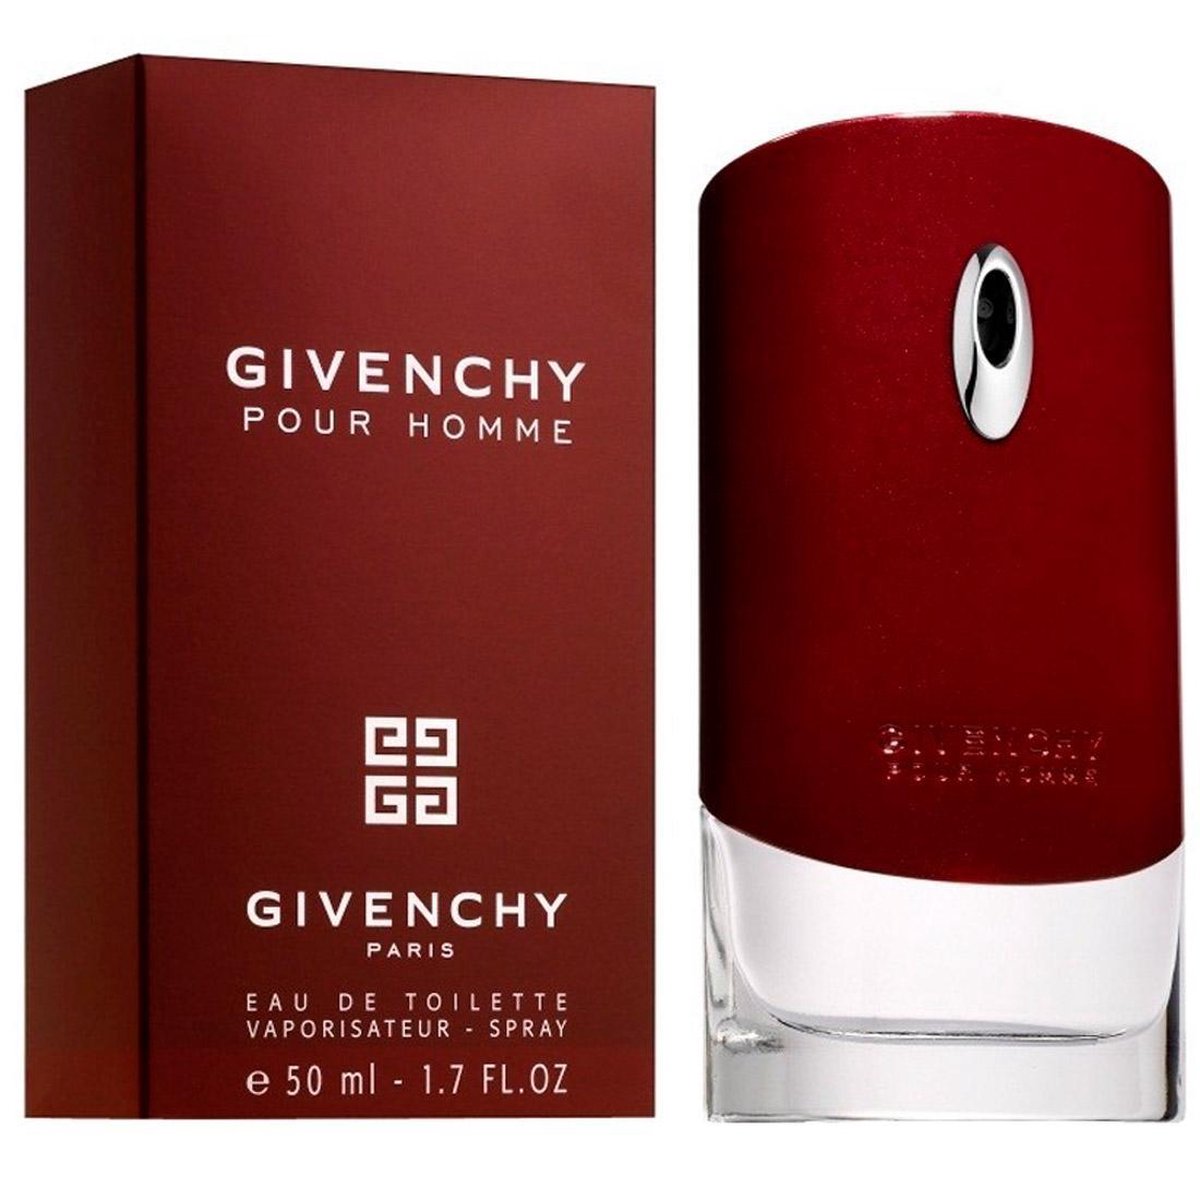 bol.com | Givenchy Pour Homme - 50 ml - Eau de toilette